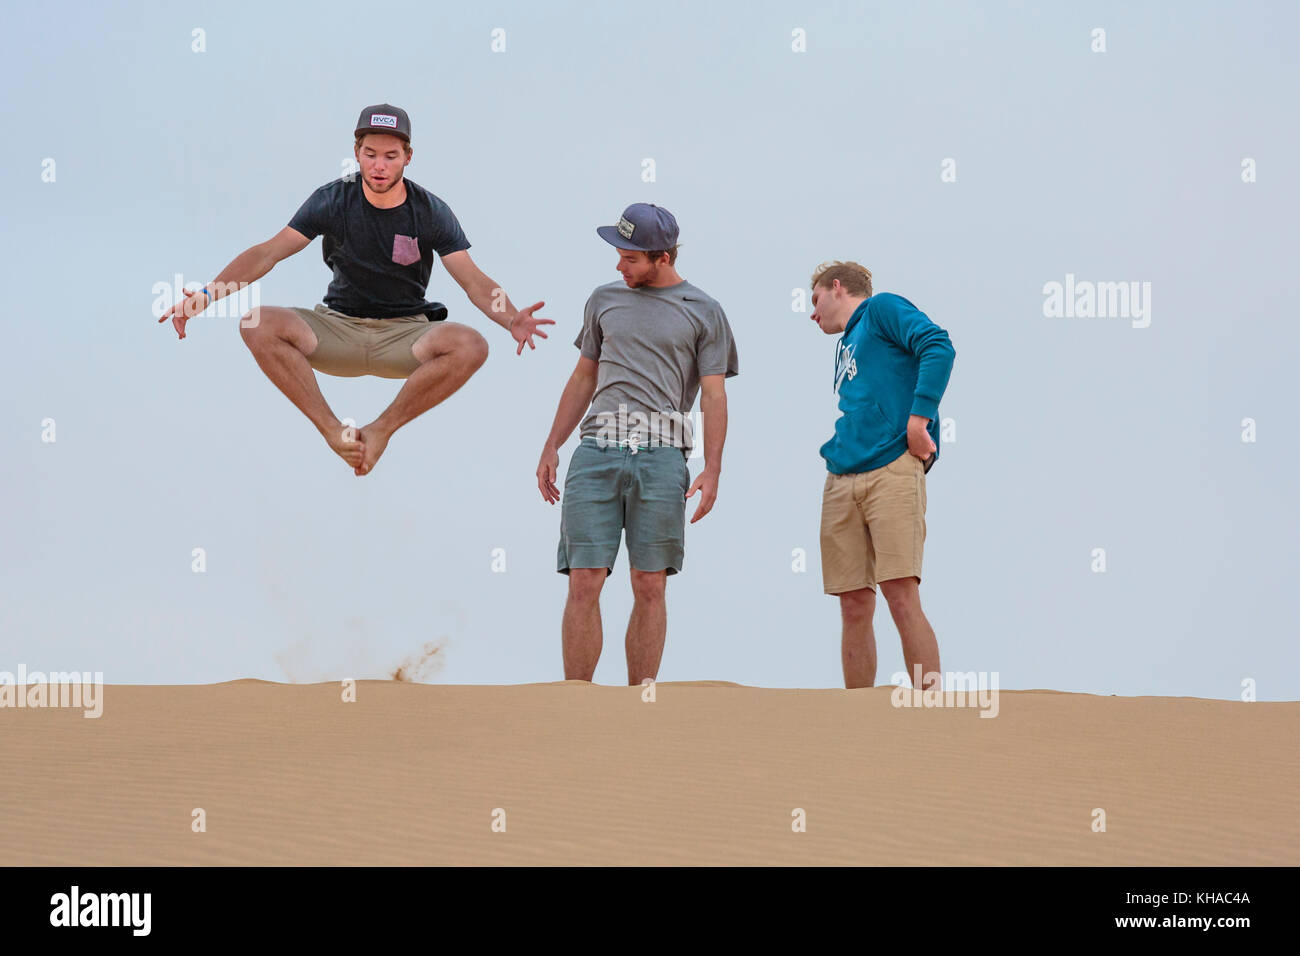 Giovane uomo salta sulla duna di sabbia, due stanno a guardare, Namibia Foto Stock